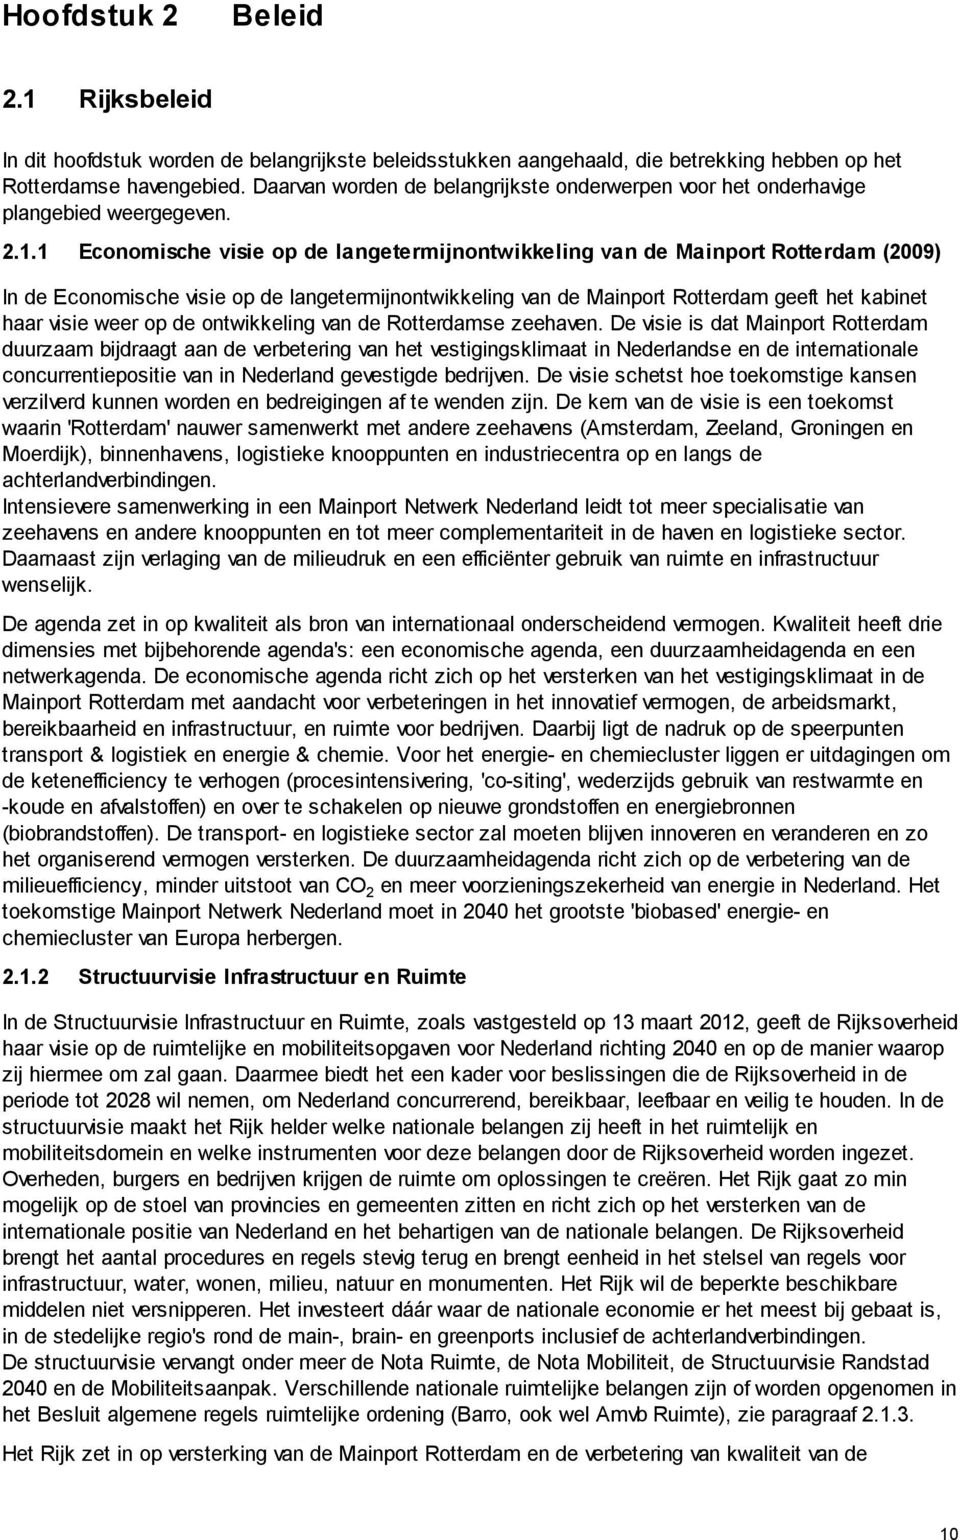 1 Economische visie op de langetermijnontwikkeling van de Mainport Rotterdam (2009) In de Economische visie op de langetermijnontwikkeling van de Mainport Rotterdam geeft het kabinet haar visie weer